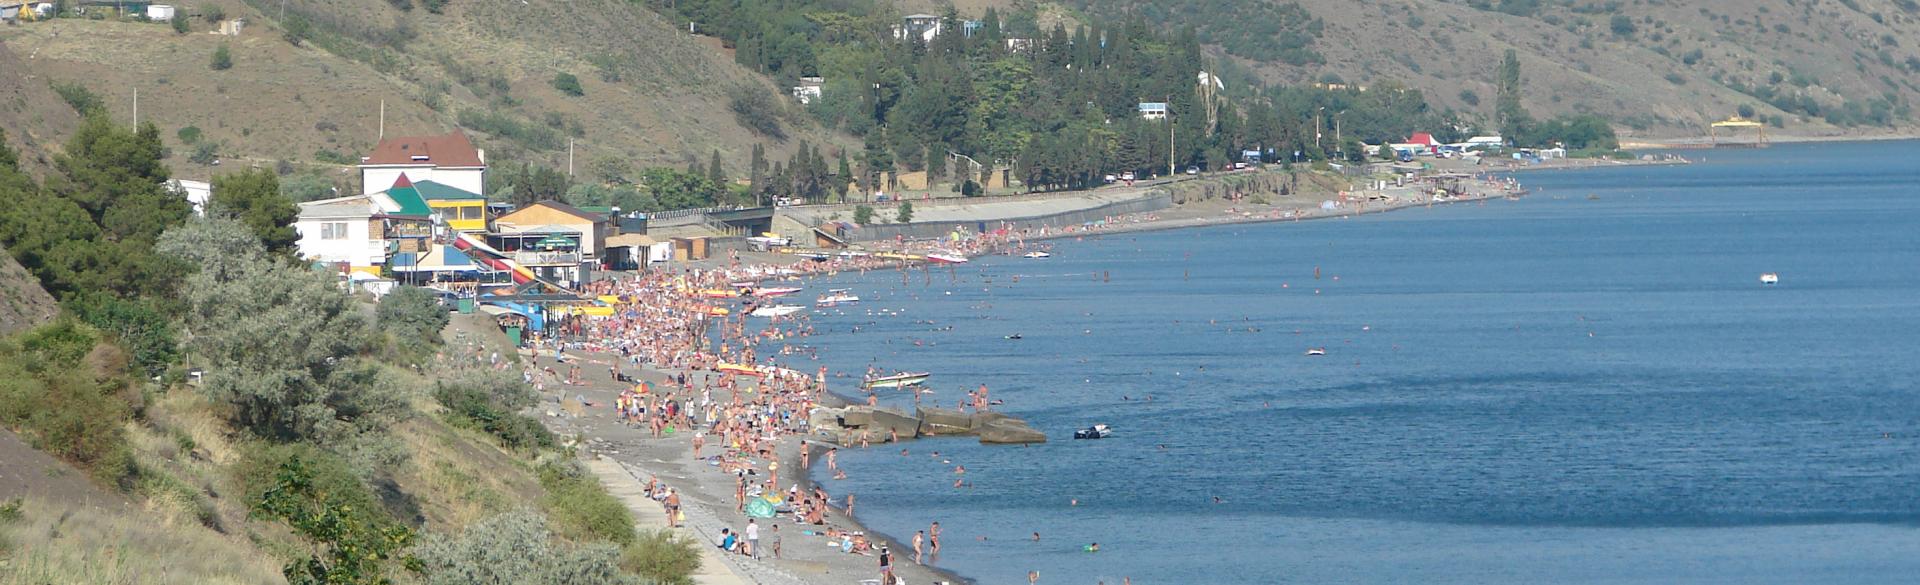 Морское - бюджетный отдых в Крыму